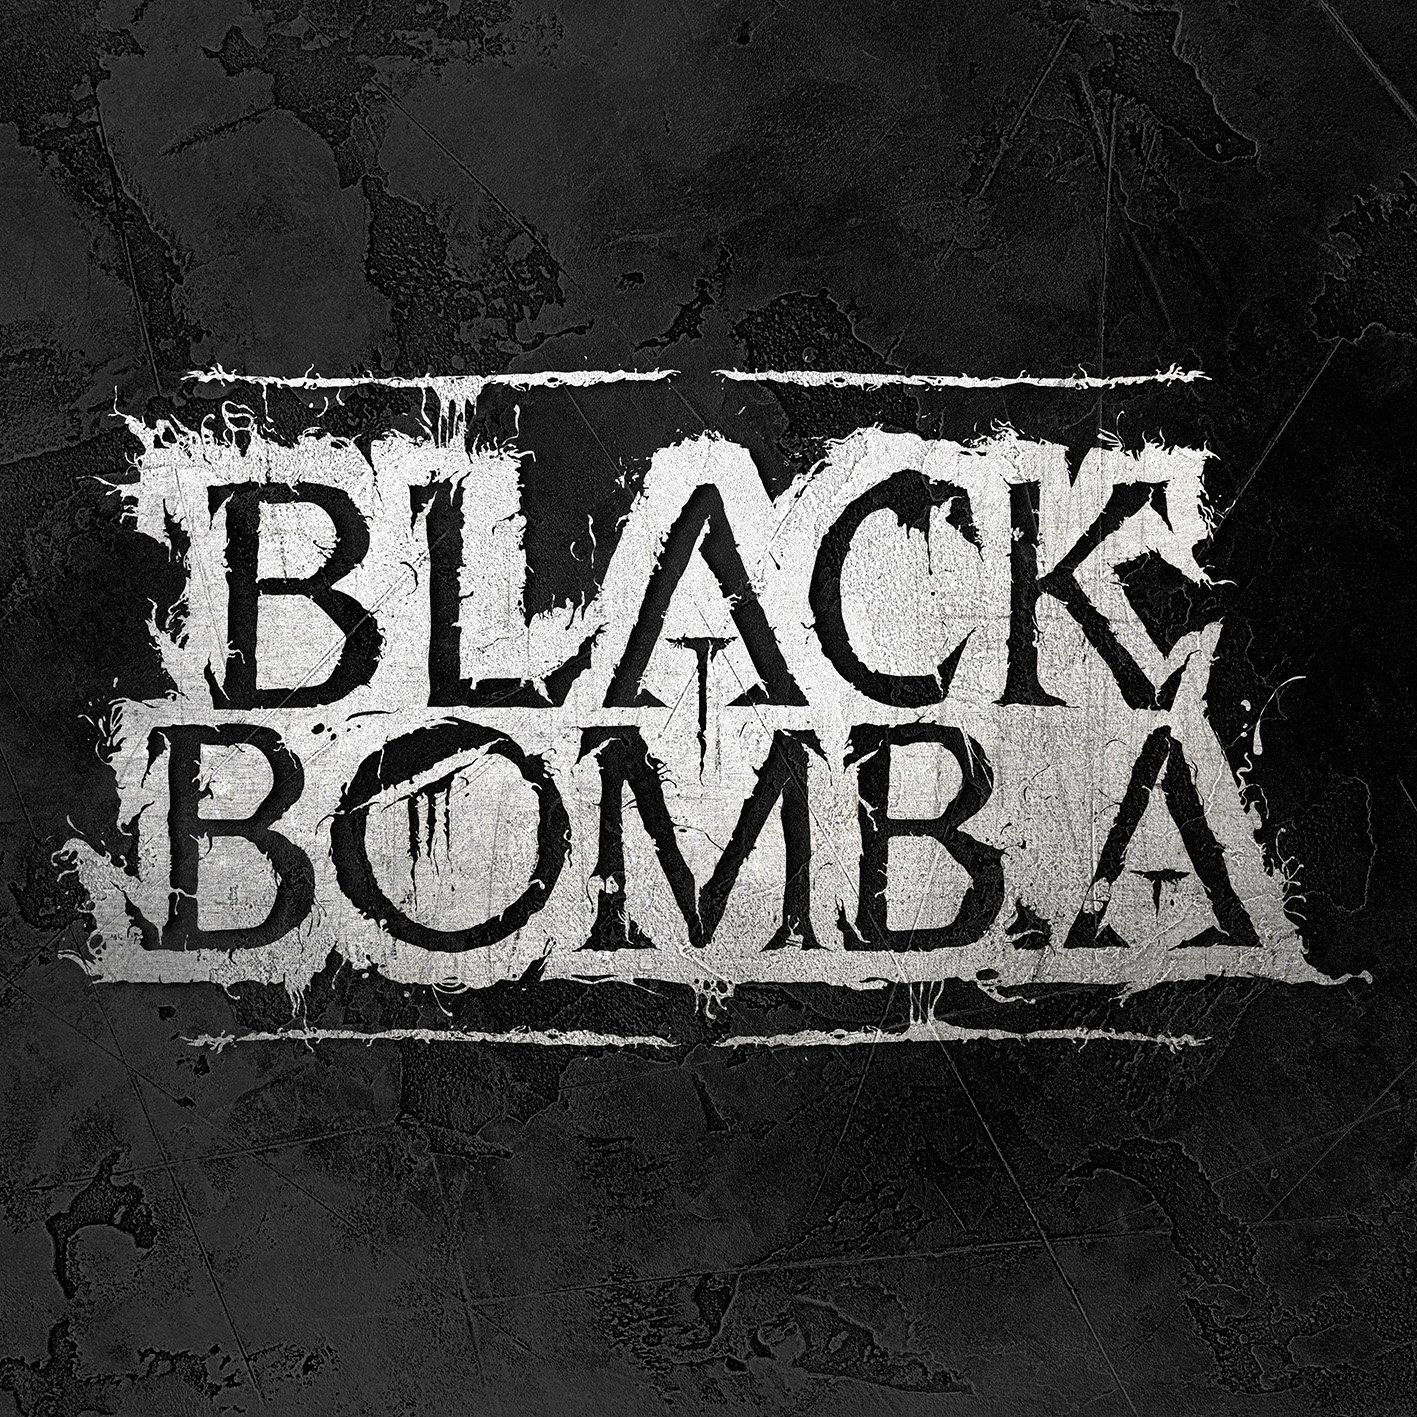 CD Shop - BLACK BOMB A BLACK BOMB A